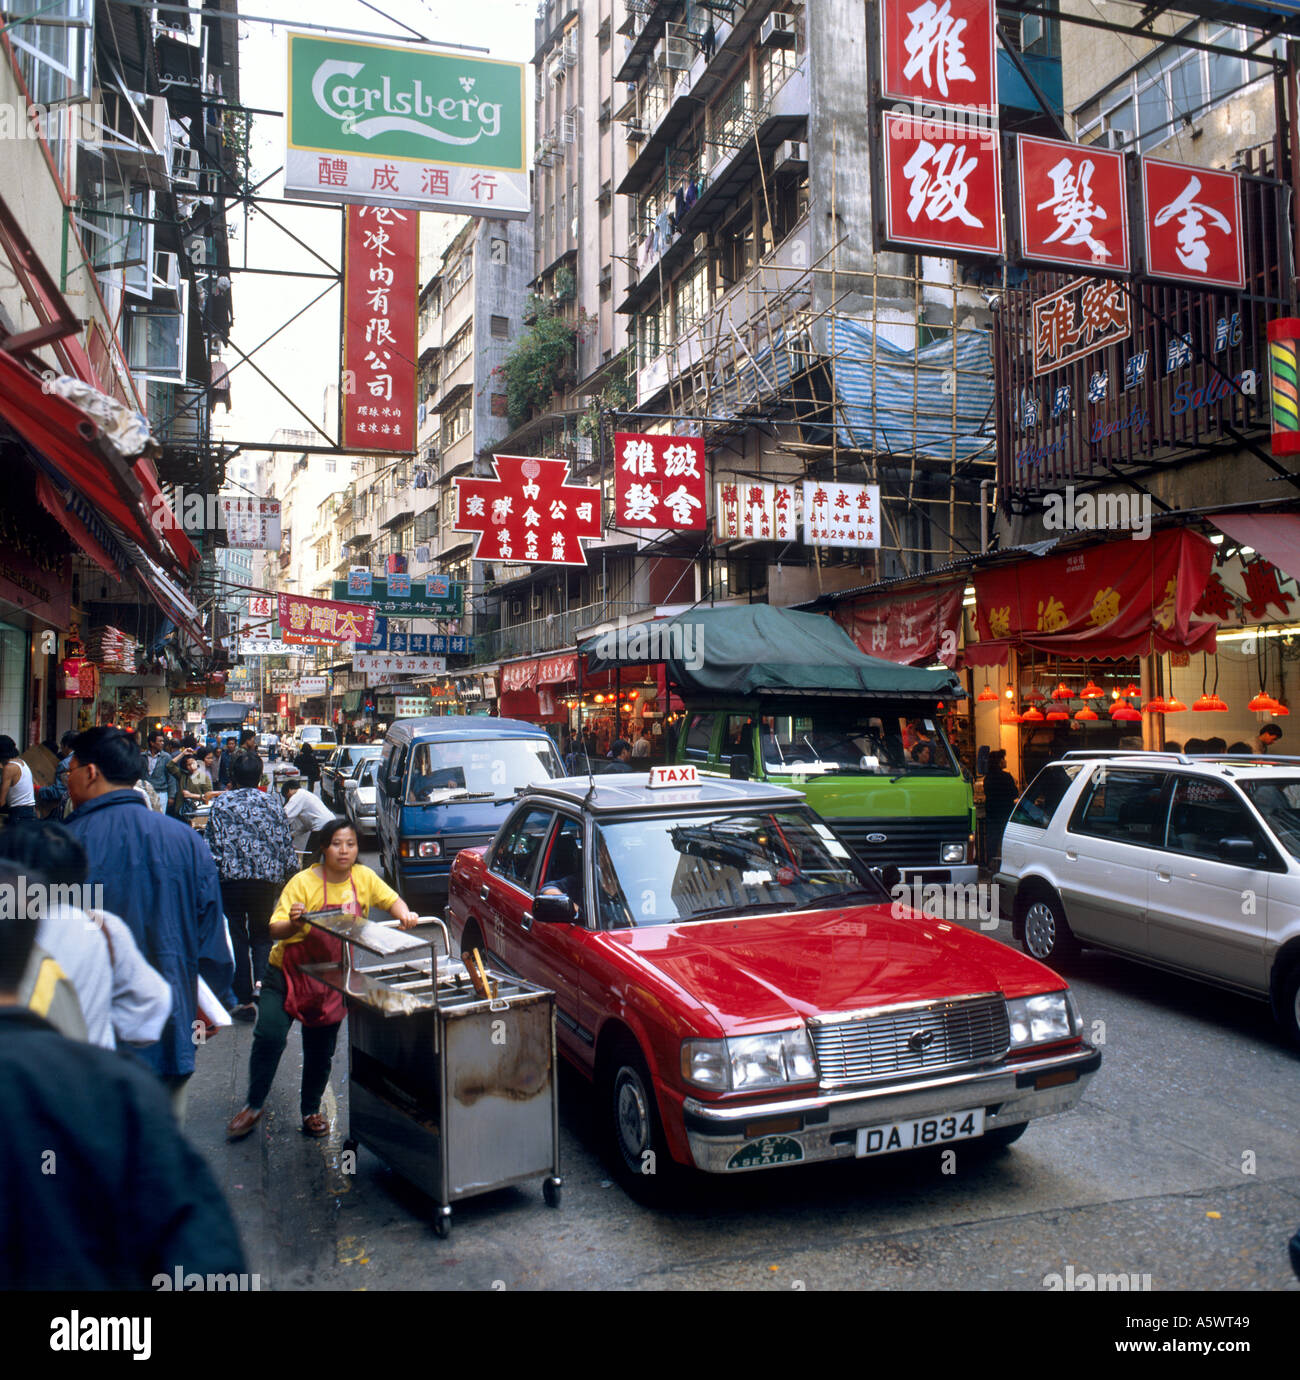 Busy street scene in 1992, Wanchai, Hong Kong Island, Hong Kong Stock Photo